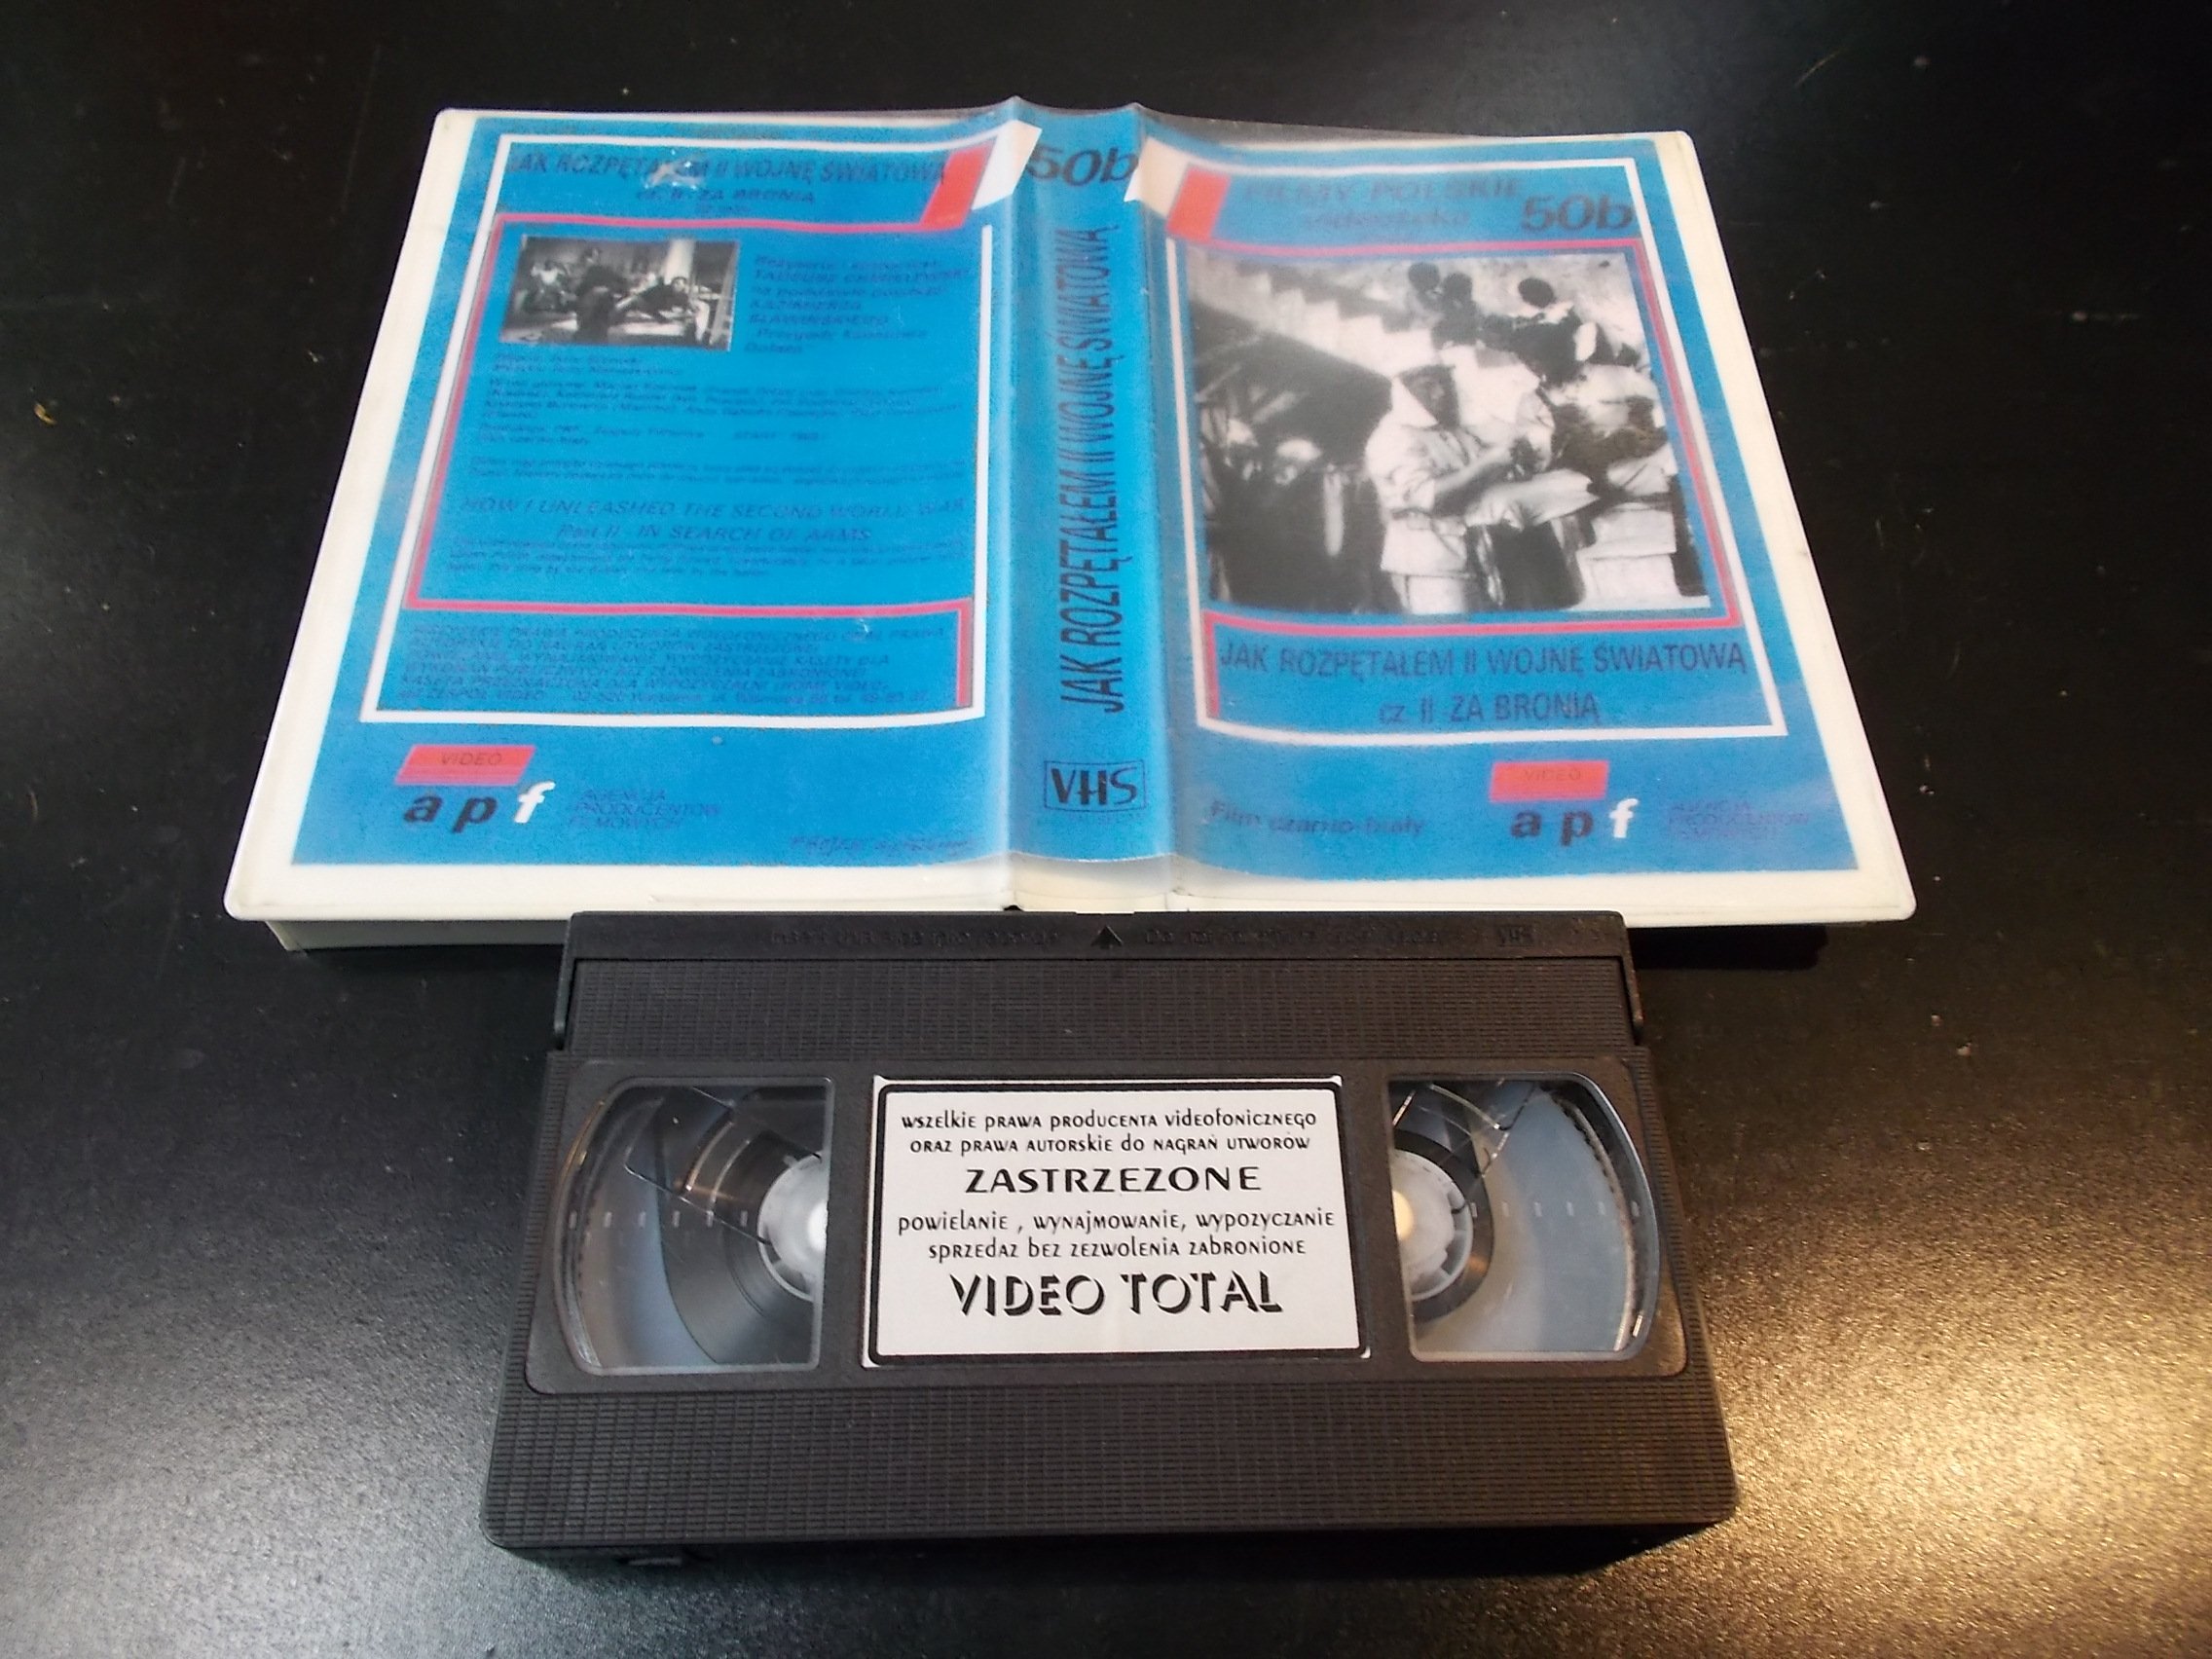 JAK ROZPENTAŁEM 2 WOJNĘ ŚWIATOWĄ cz.2 ZA BRONIĄ - kaseta Video VHS - 1355 Sklep 